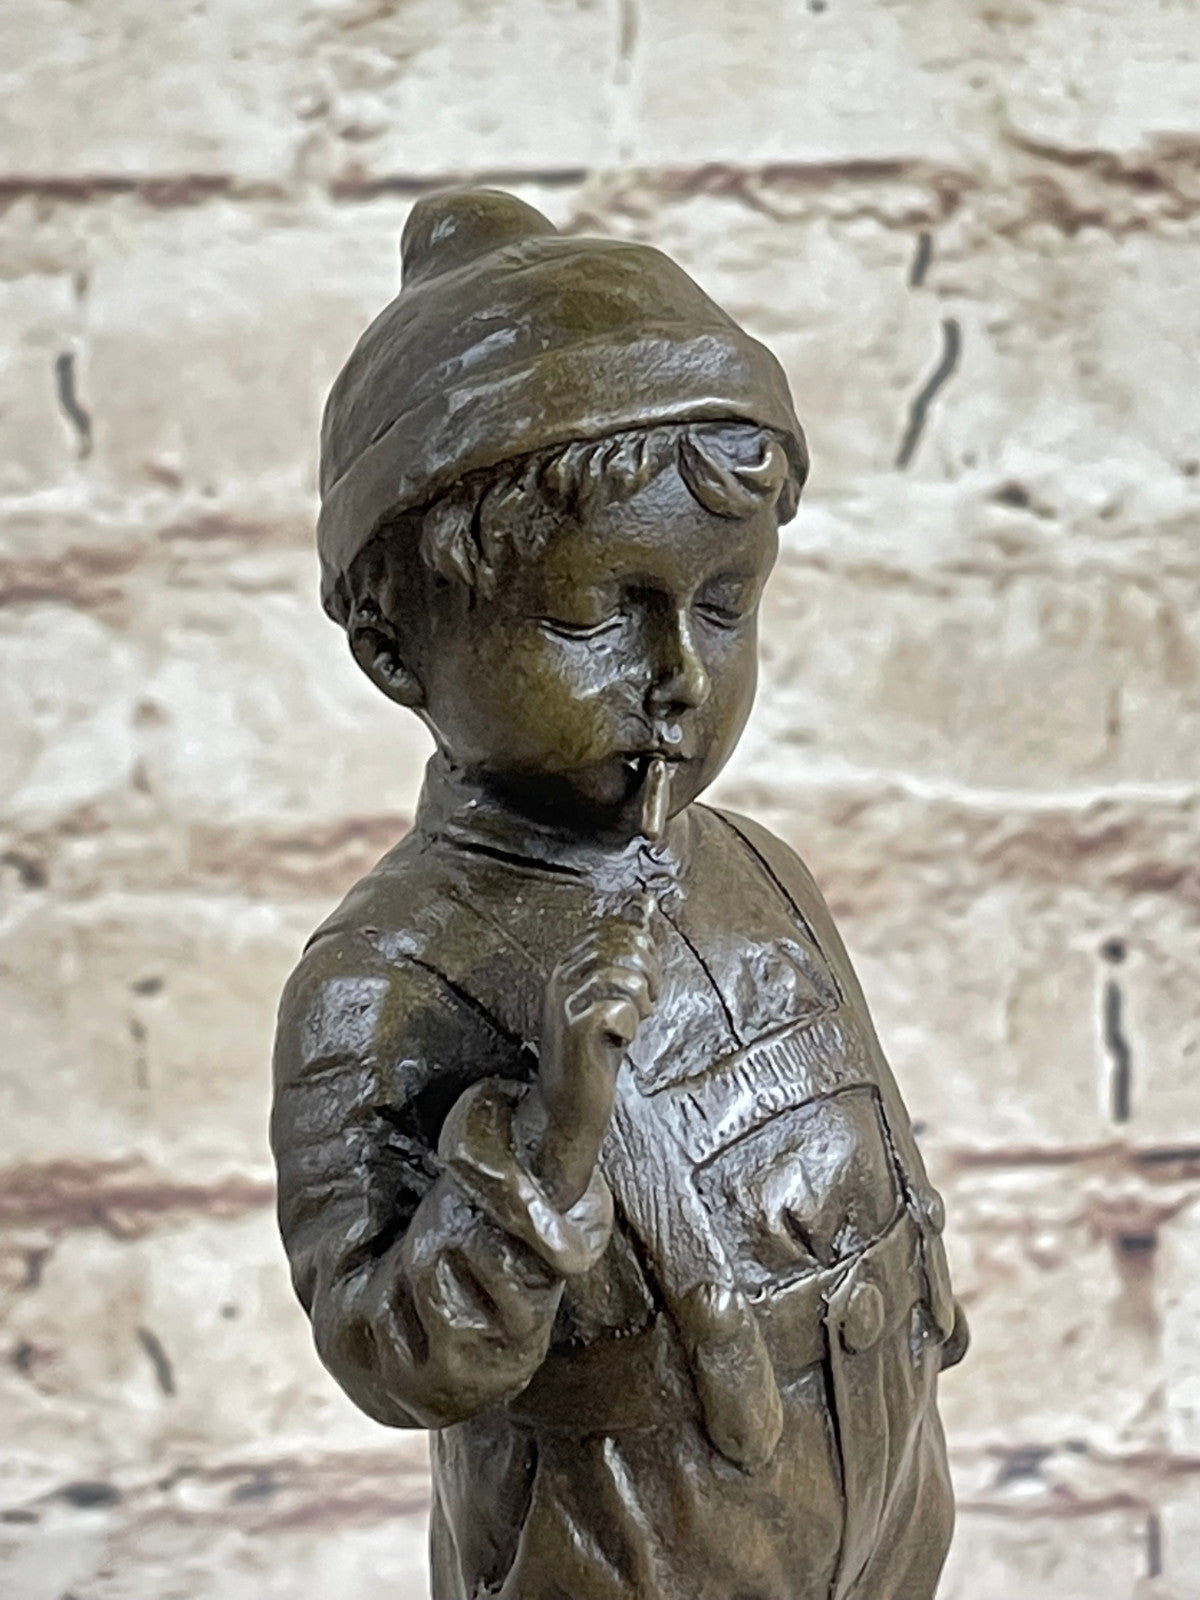 Hand Made Hot Cast Little Boy Smoking Humorous Bronze Sculpture Figurine